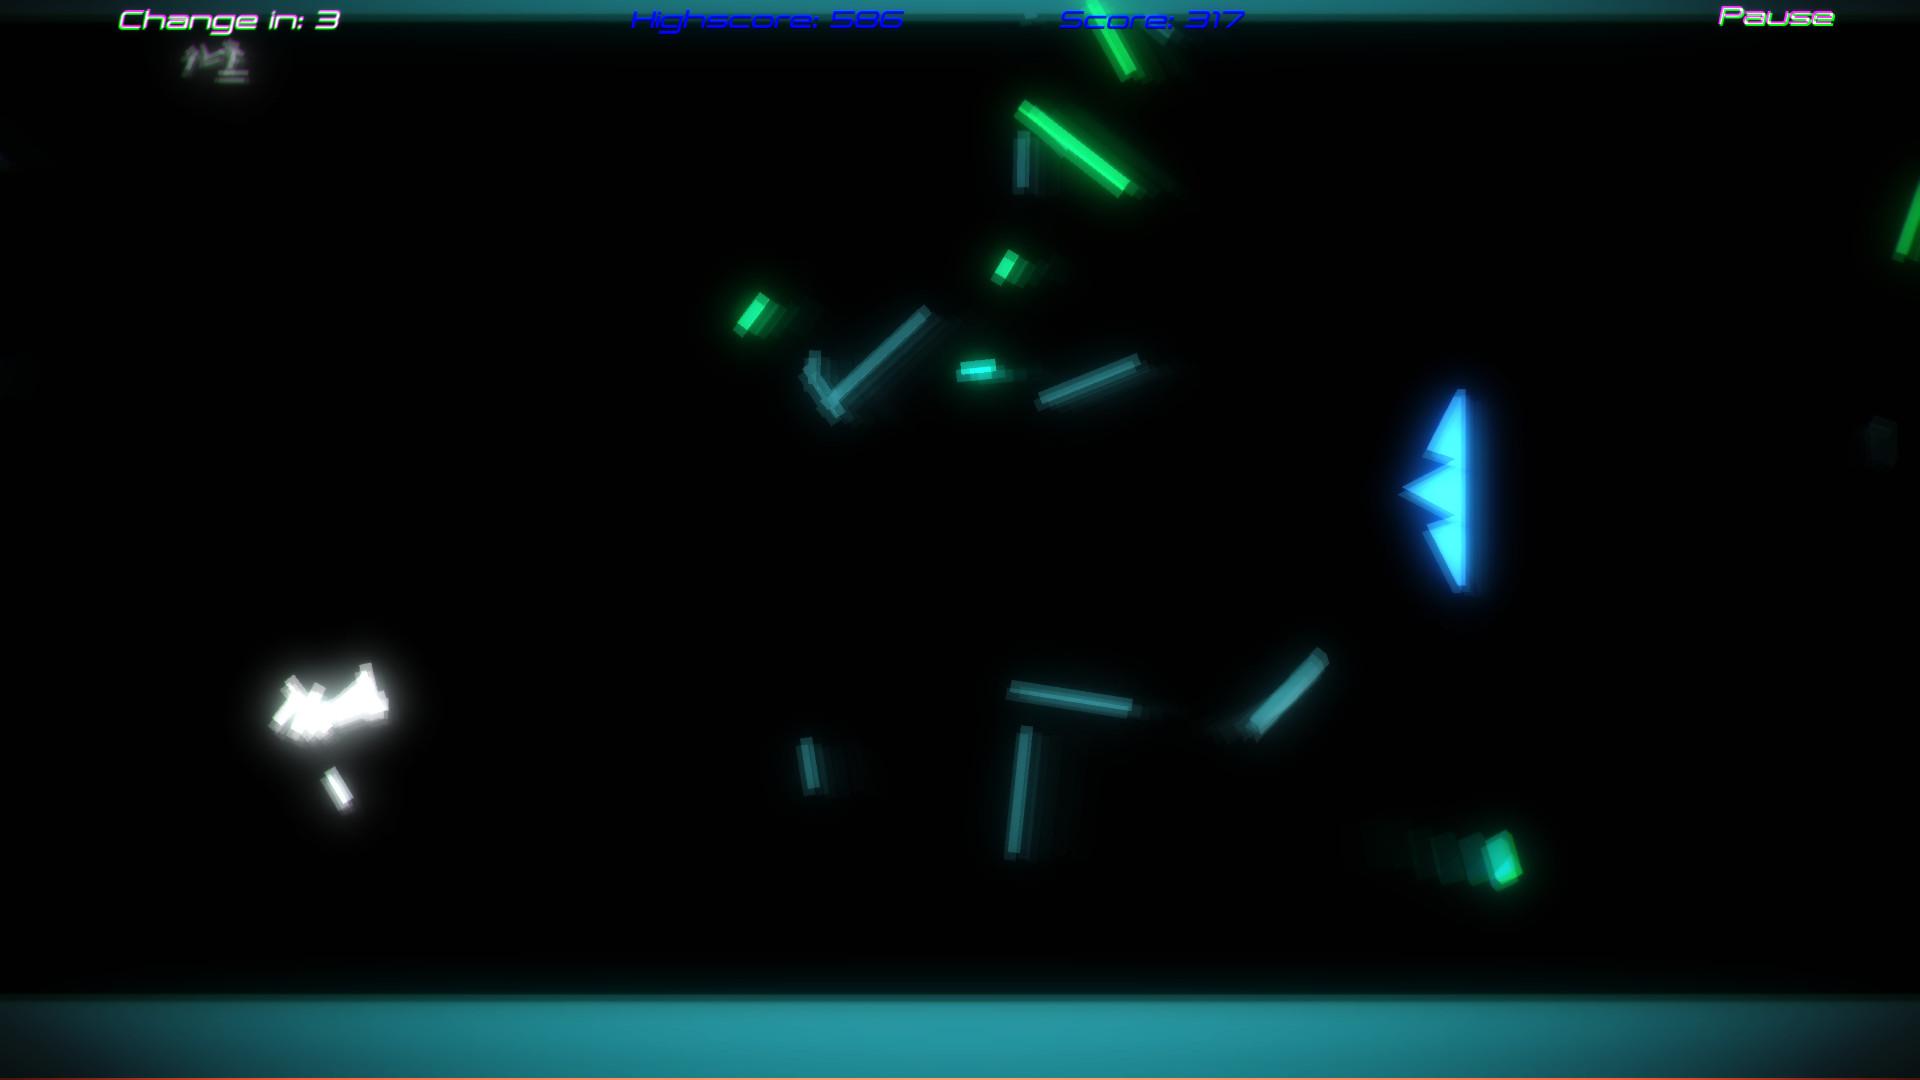 Screenshot №3 from game Shape Shifter